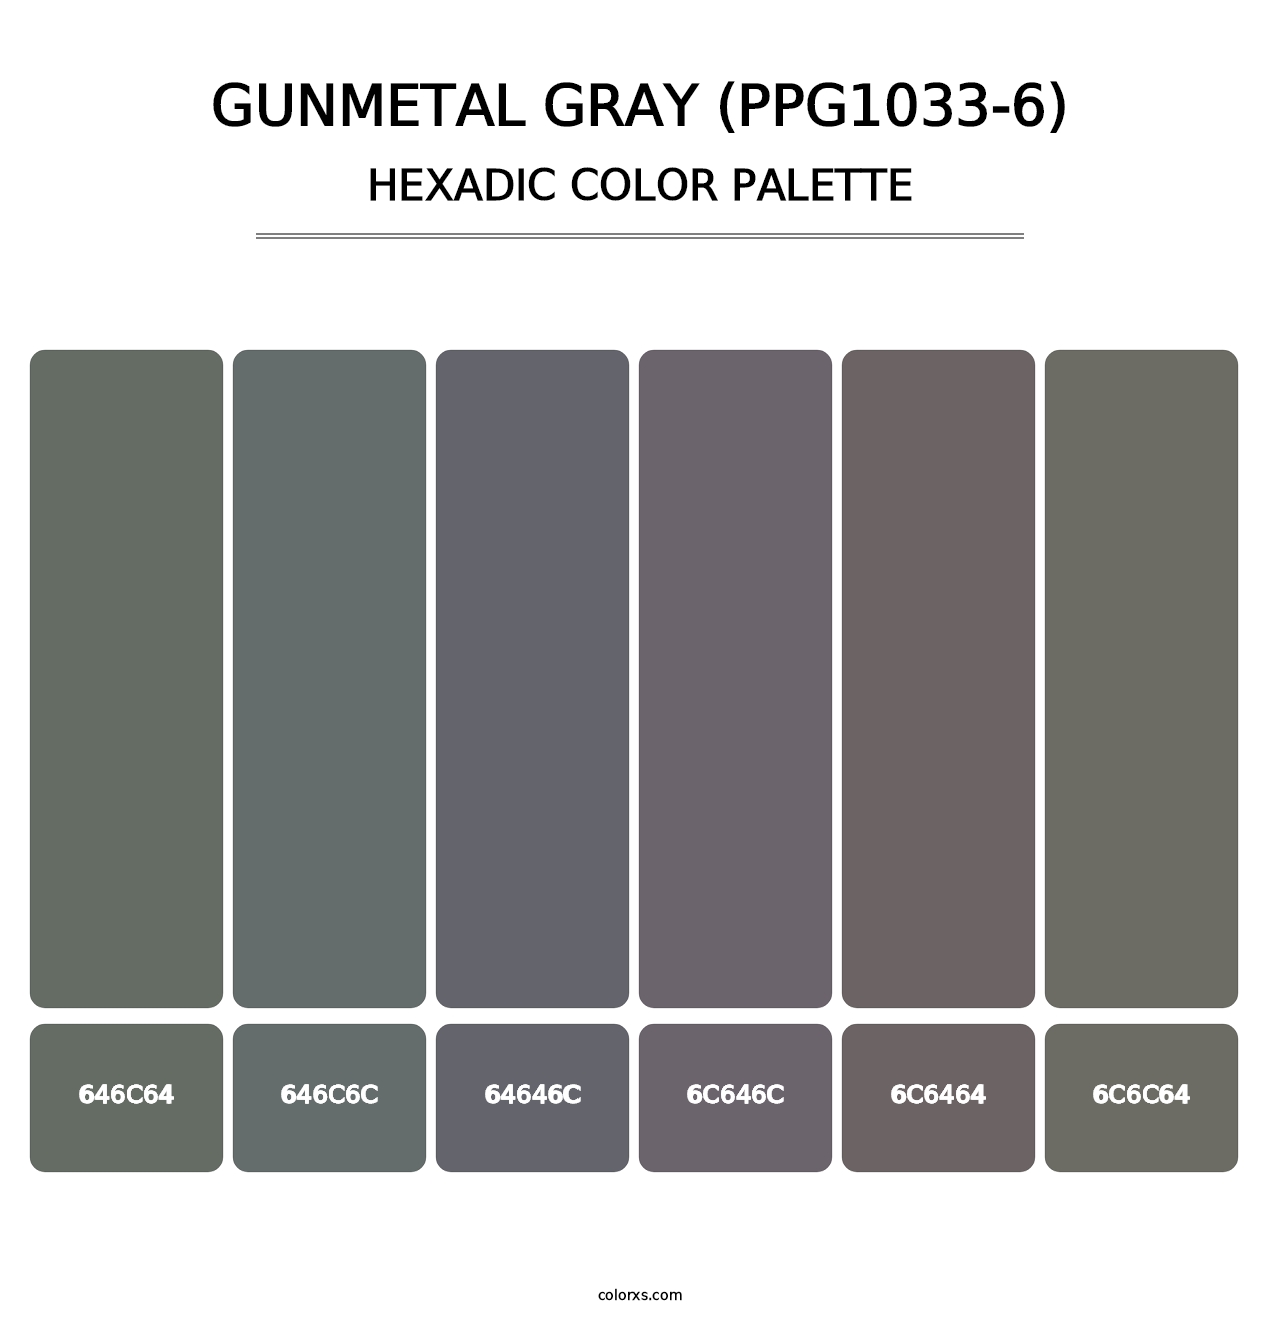 Gunmetal Gray (PPG1033-6) - Hexadic Color Palette